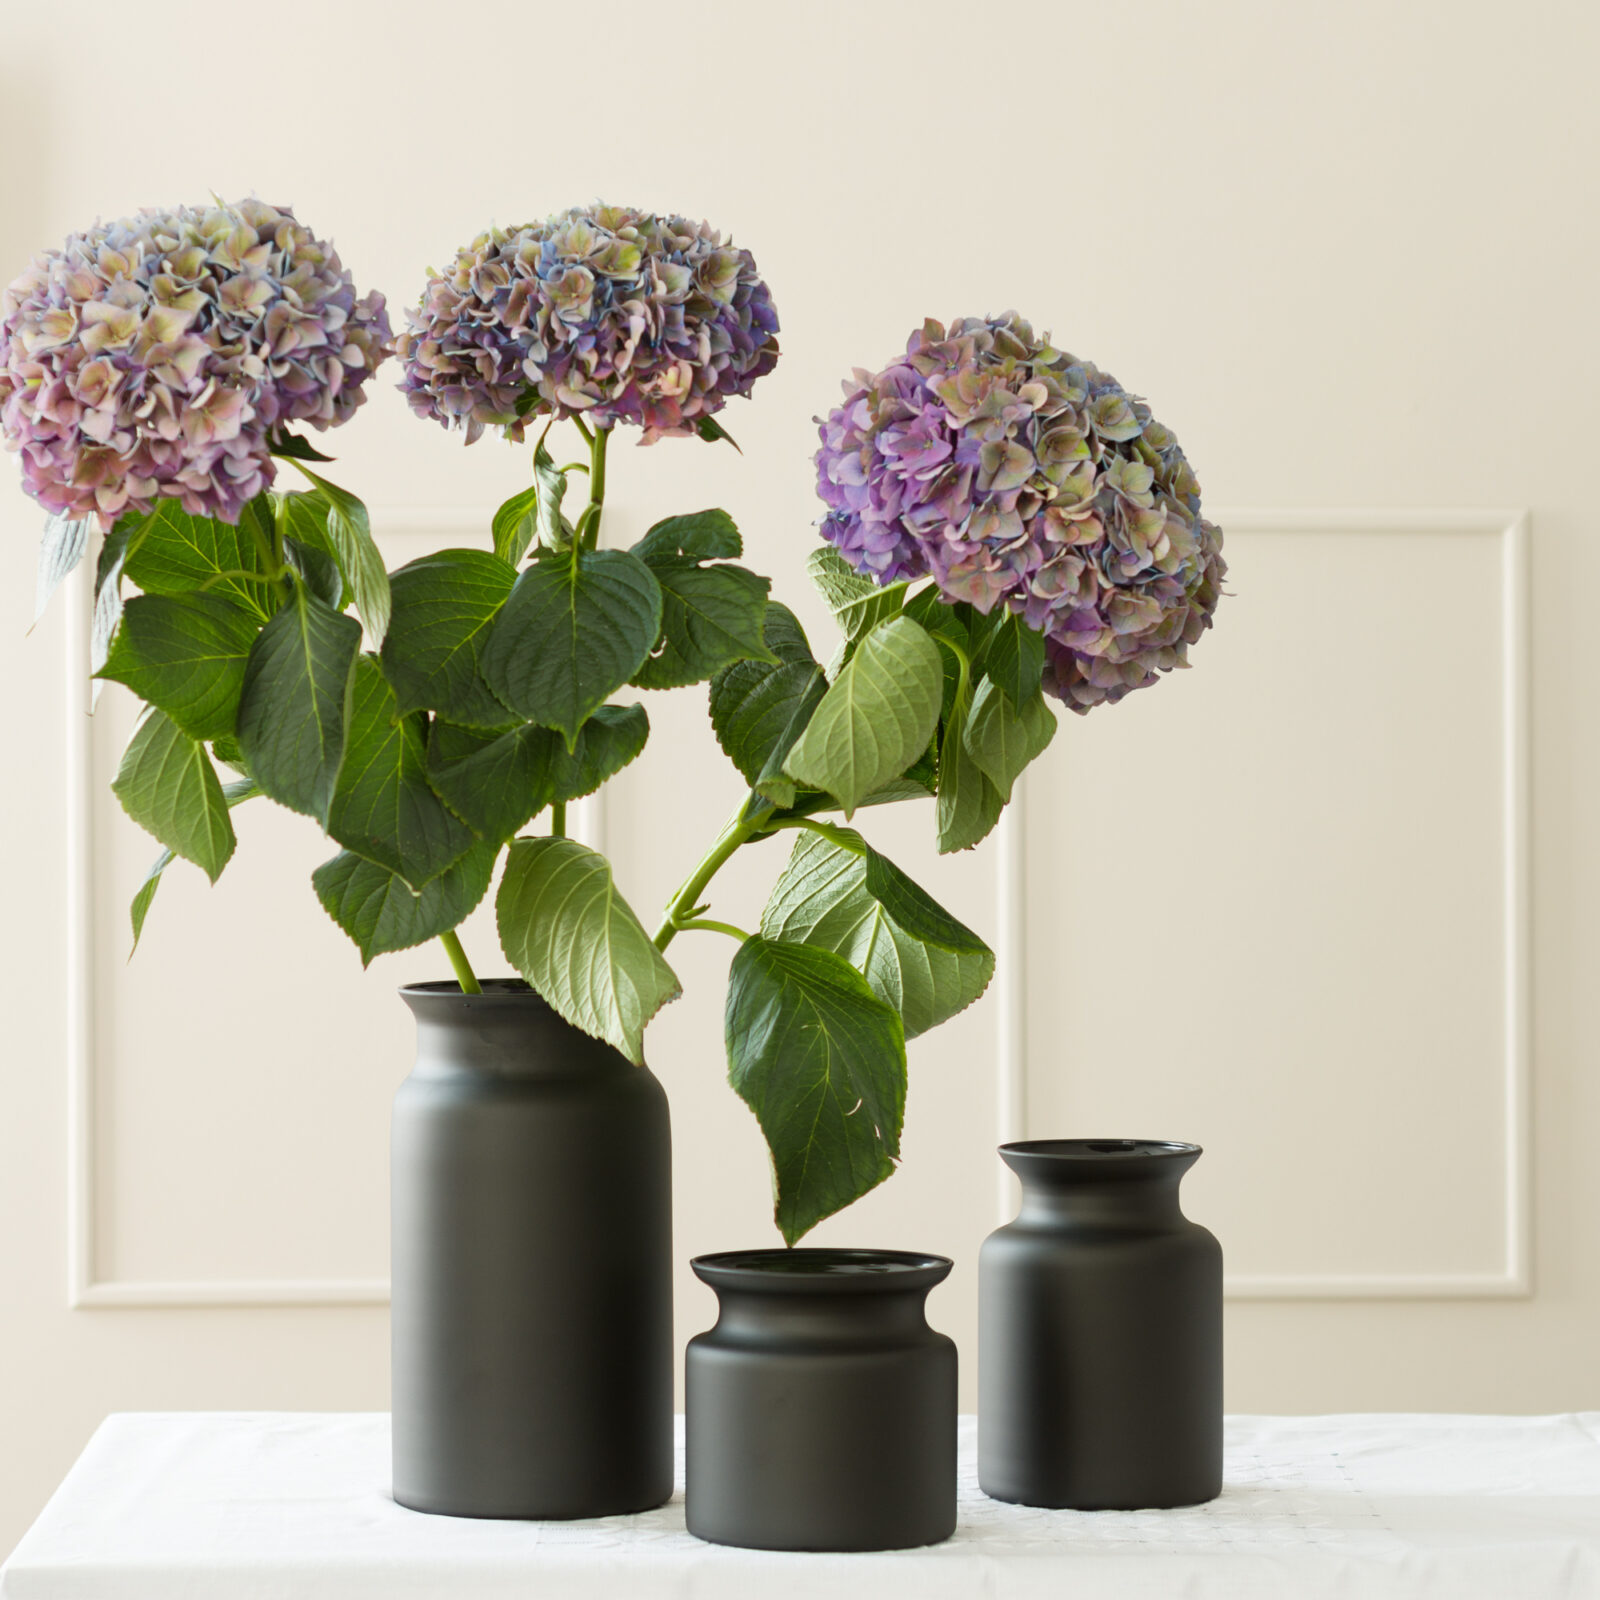 Komplet wazonów słój + fioletowe kwiaty kule